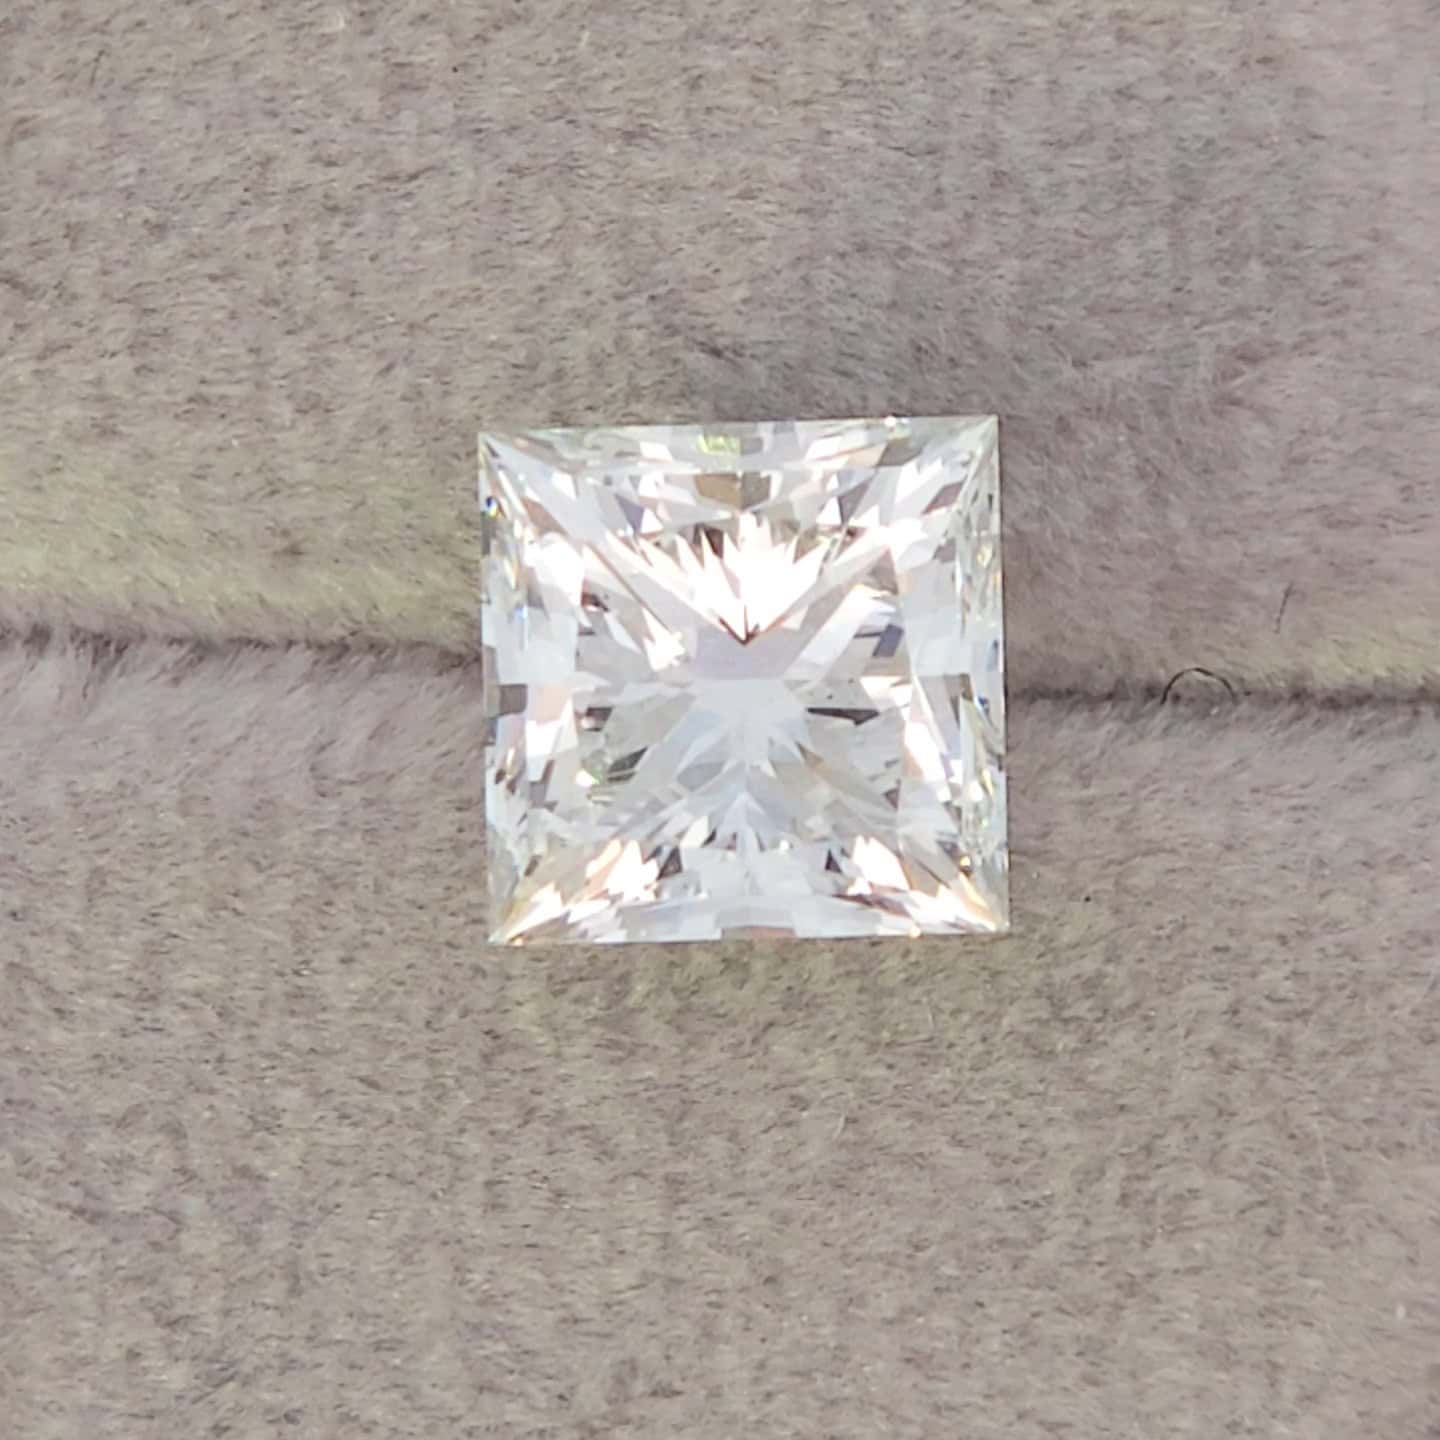 Lowest Price Eco Diamond - 2.01 ct Princess G-VS2 IGI LG623485136 - Excellent symmetry, Excellent polish.